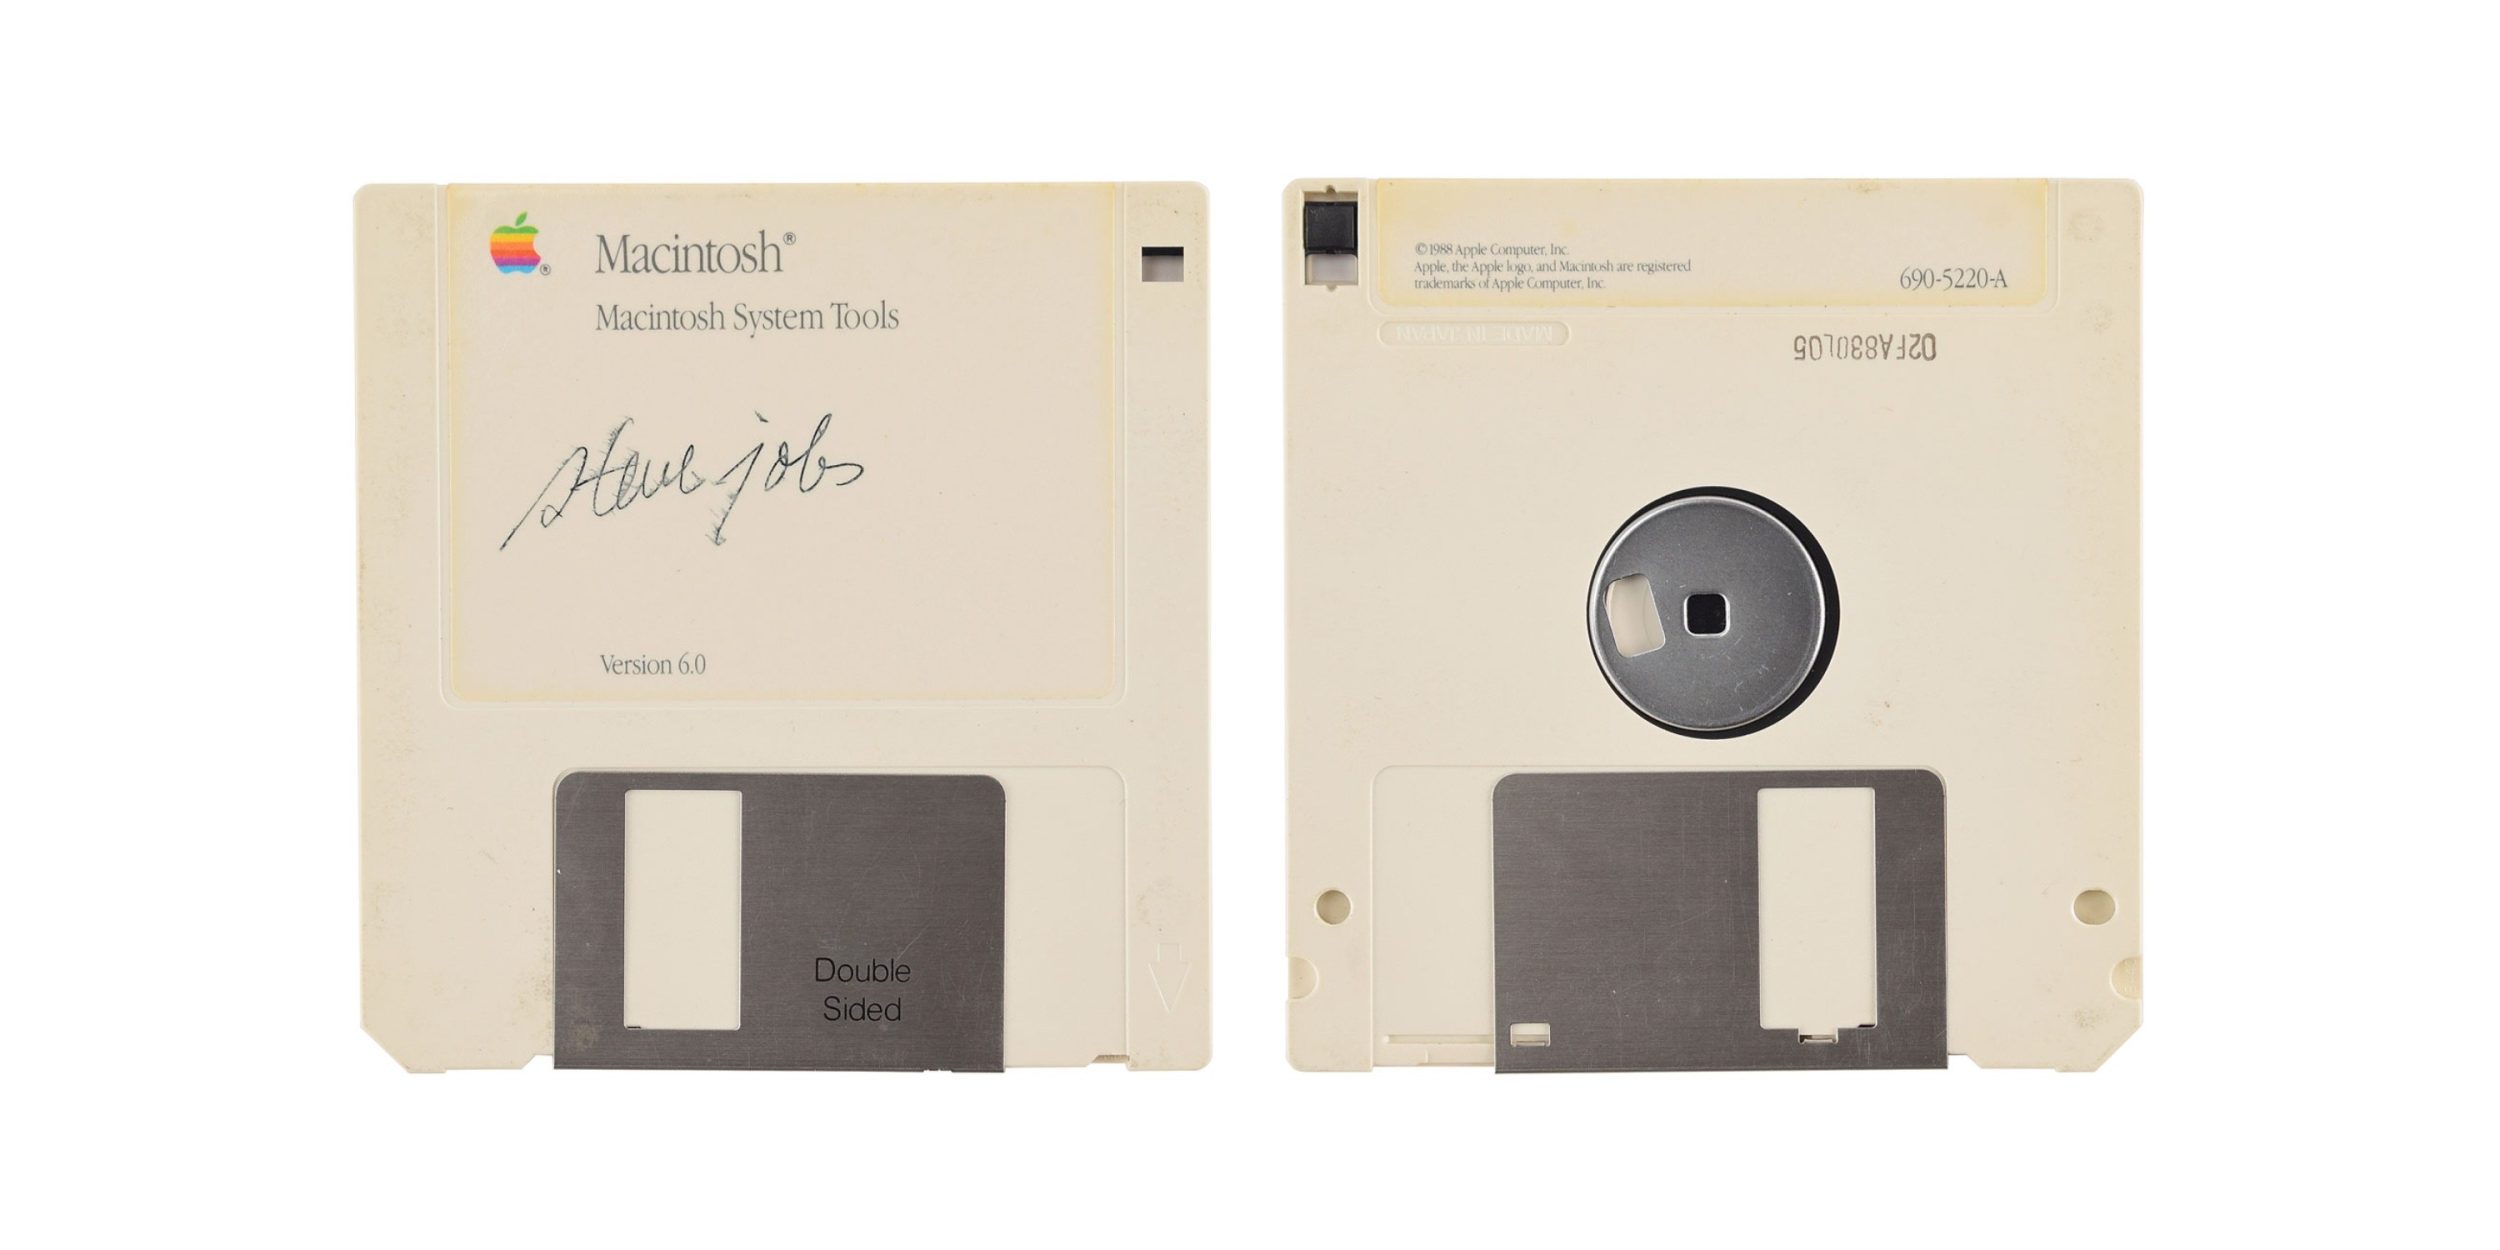 Disquete do Macintosh System Tools autografado por Steve Jobs